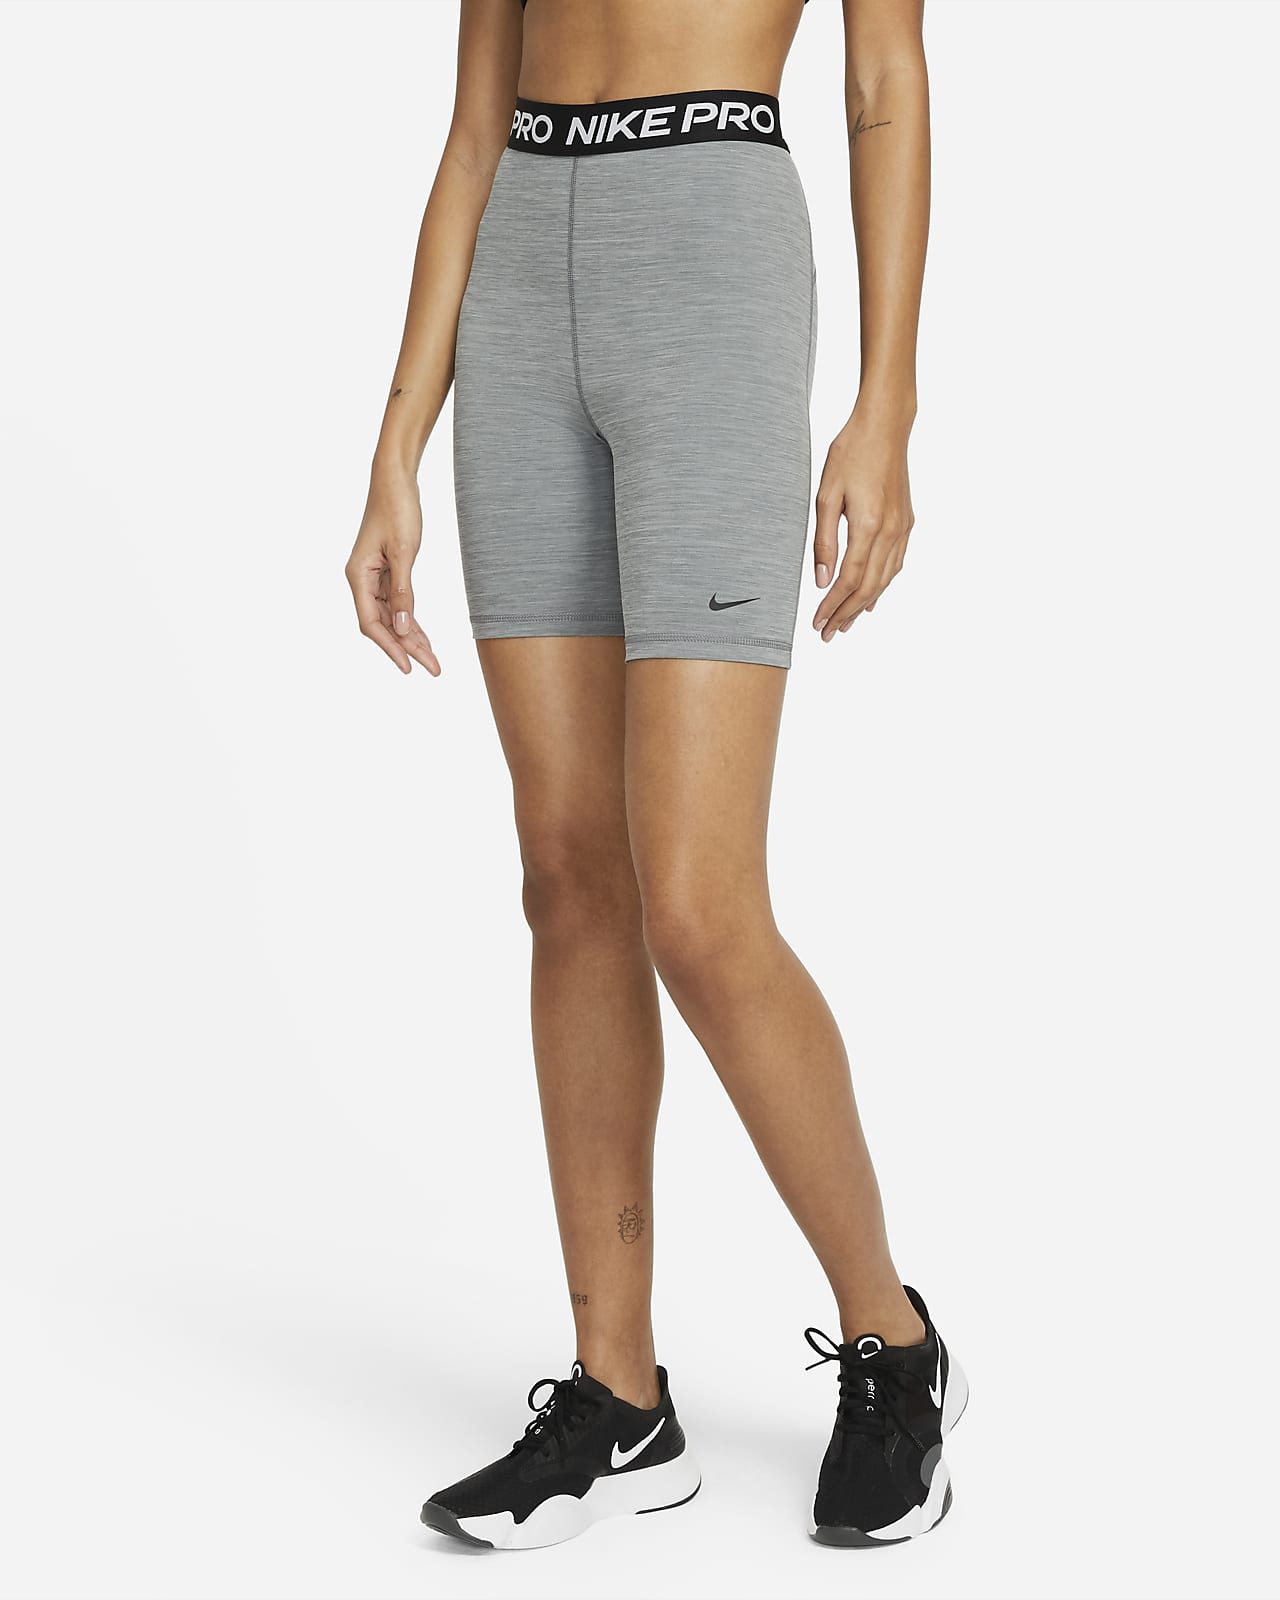 Bermuda Shorts + Long Shorts for Women